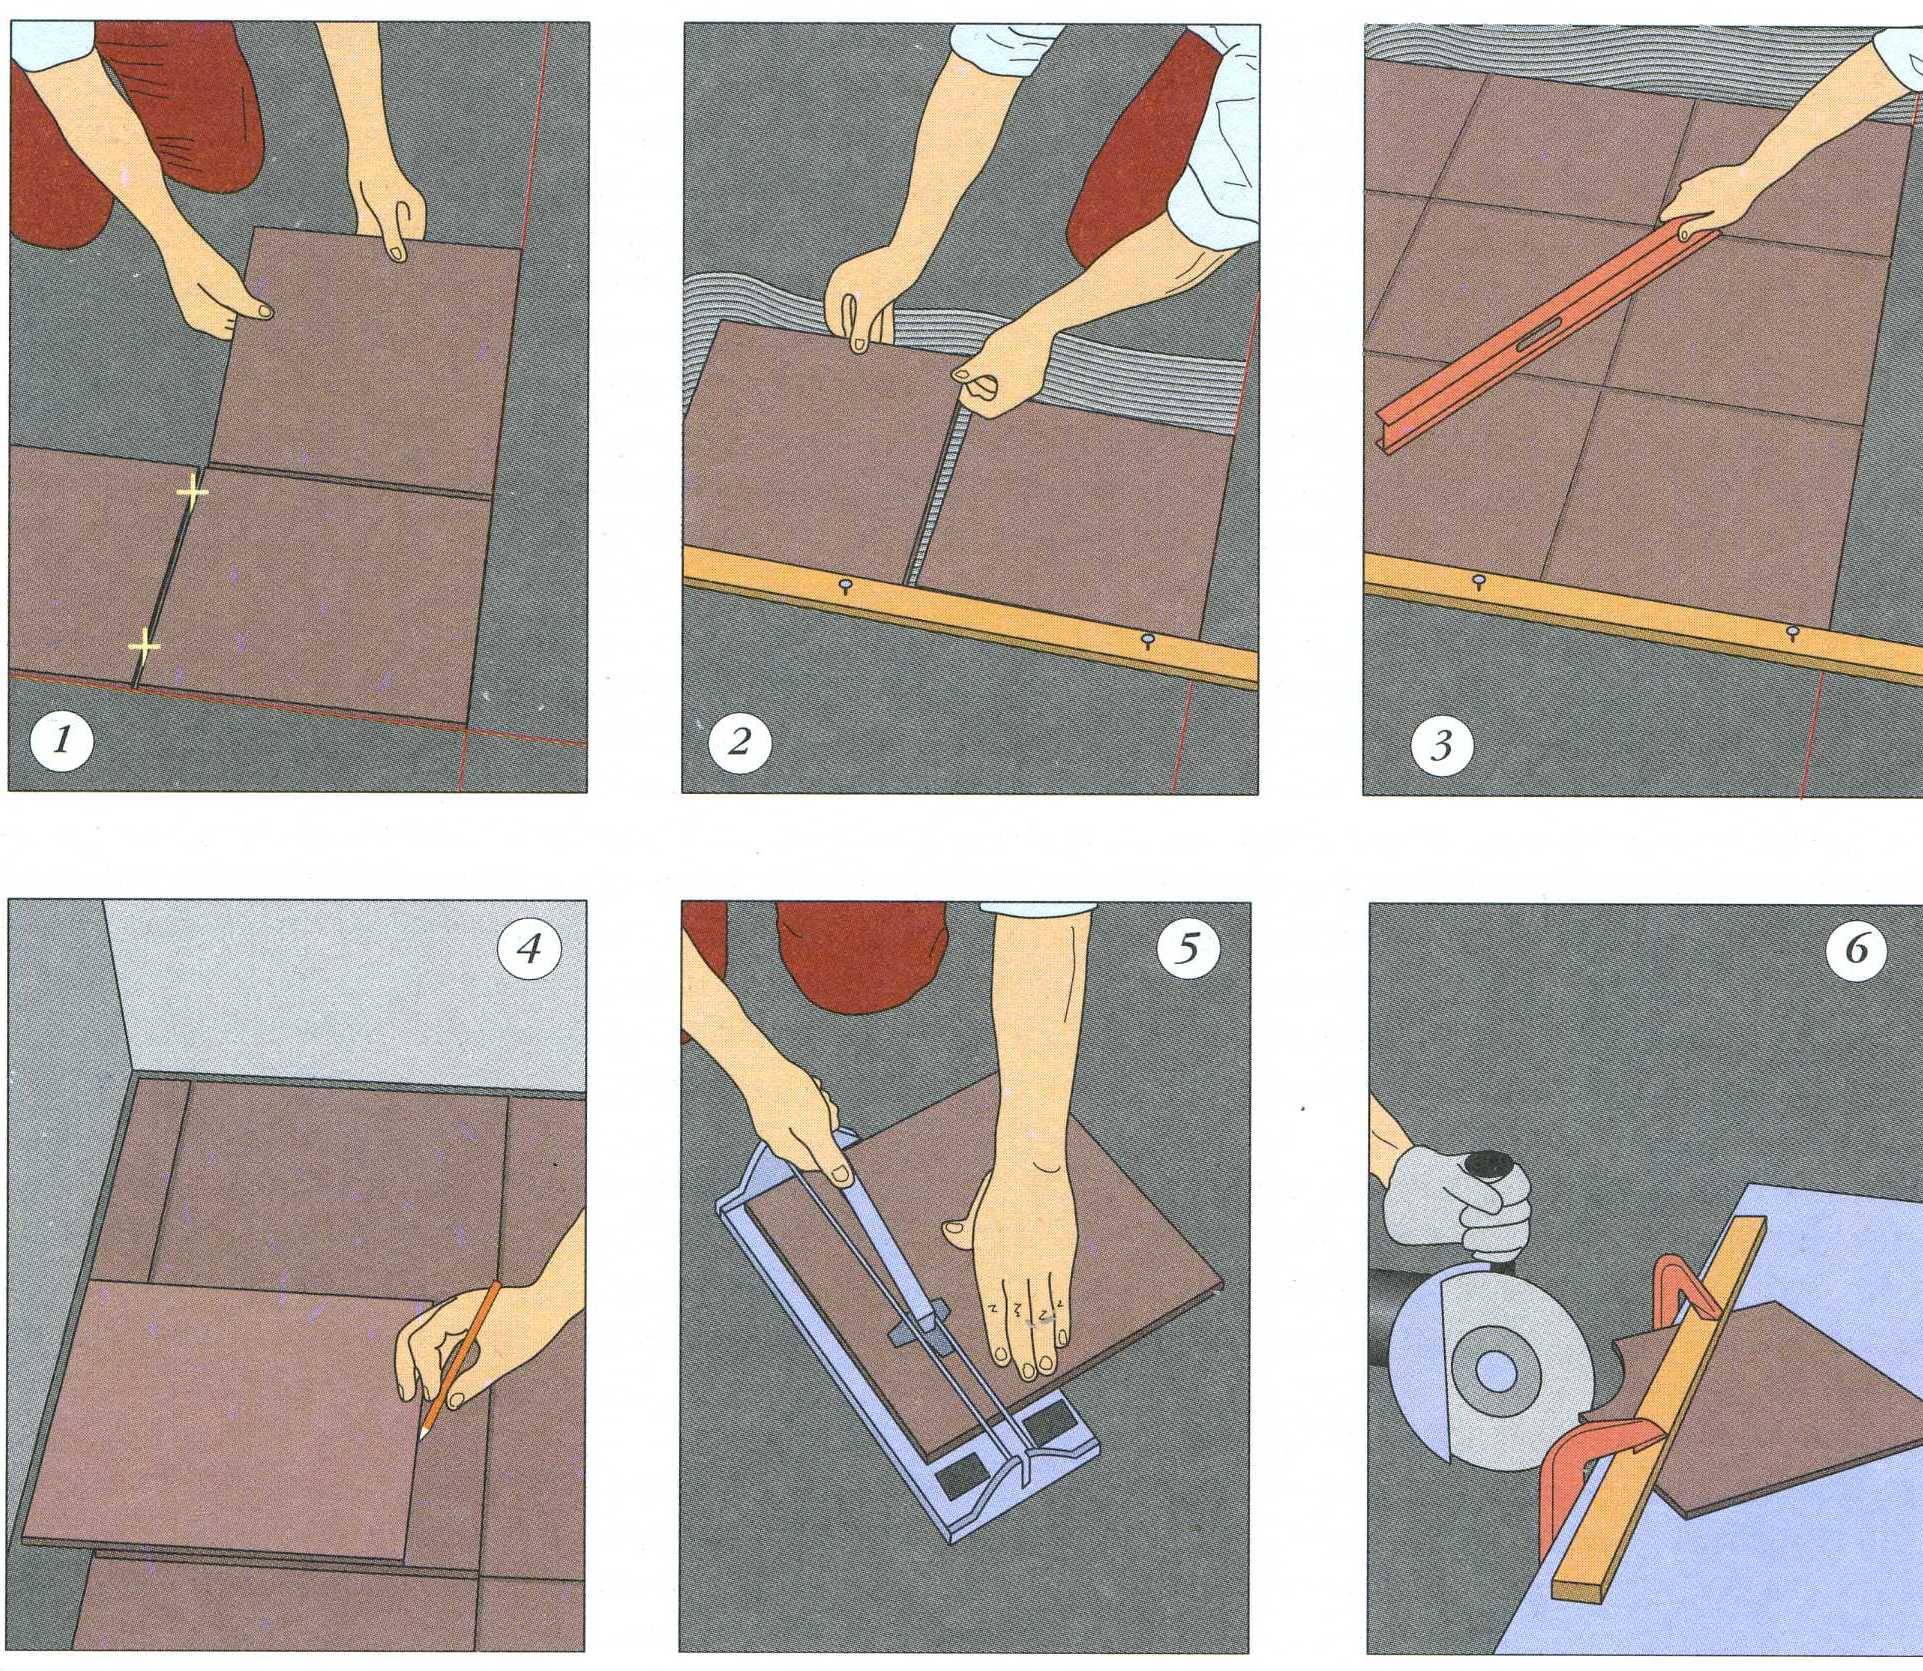 Как укладывать плитку на гипсокартон: пошаговая инструкция - все про керамическую плитку